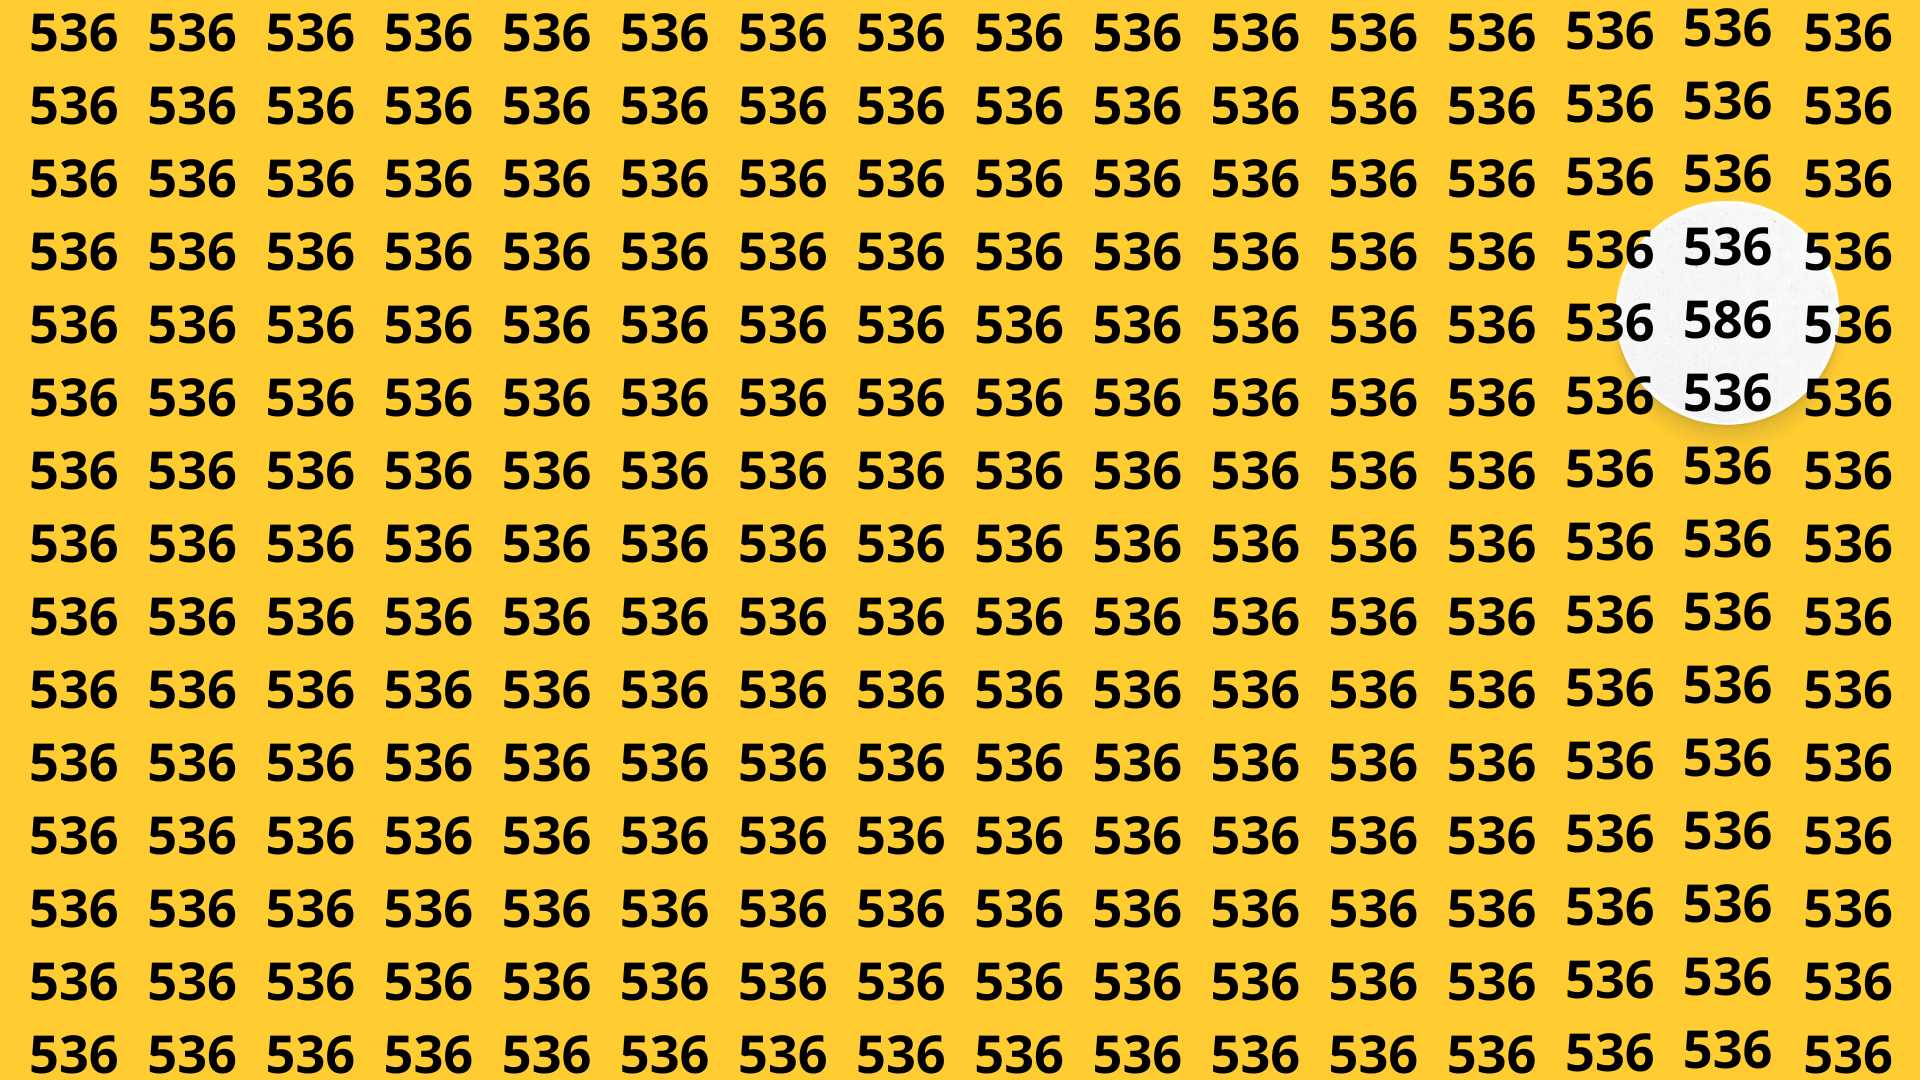 Zagadka optyczna. W 15 sekund znajdź liczbę 586. Fot. bryk.pl (2).jpg